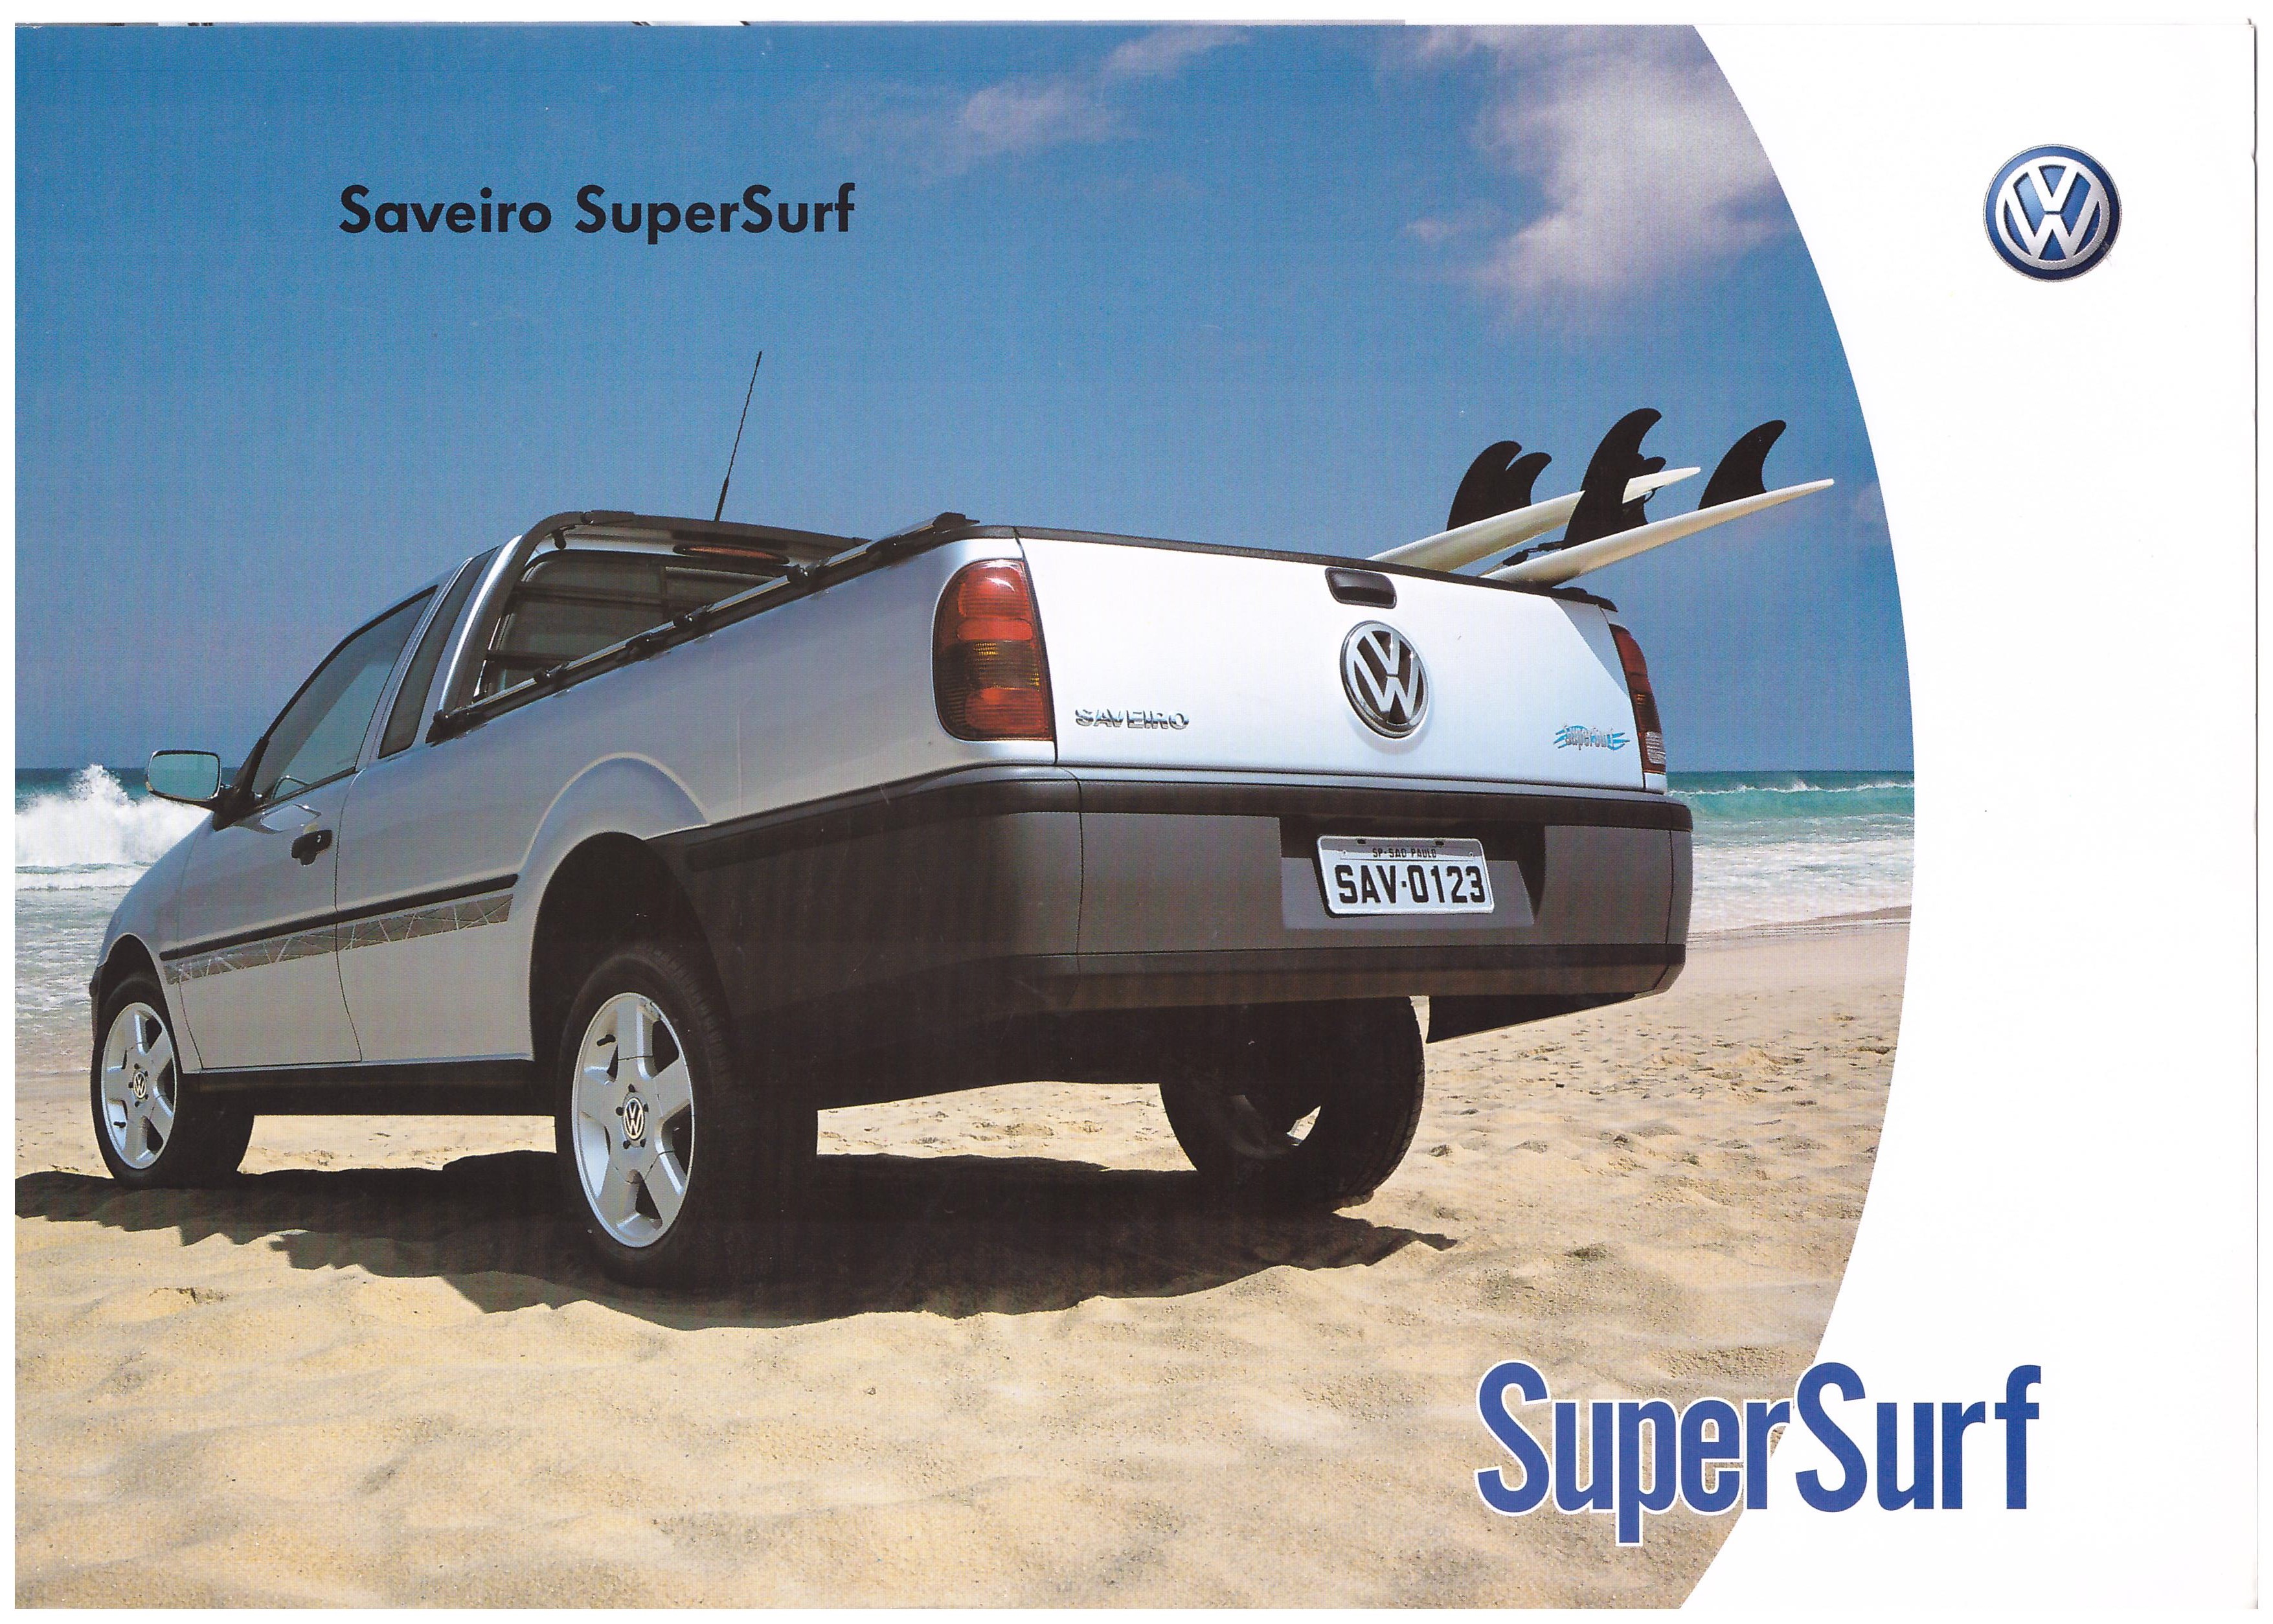  Artigos - VW Saveiro Super Surf